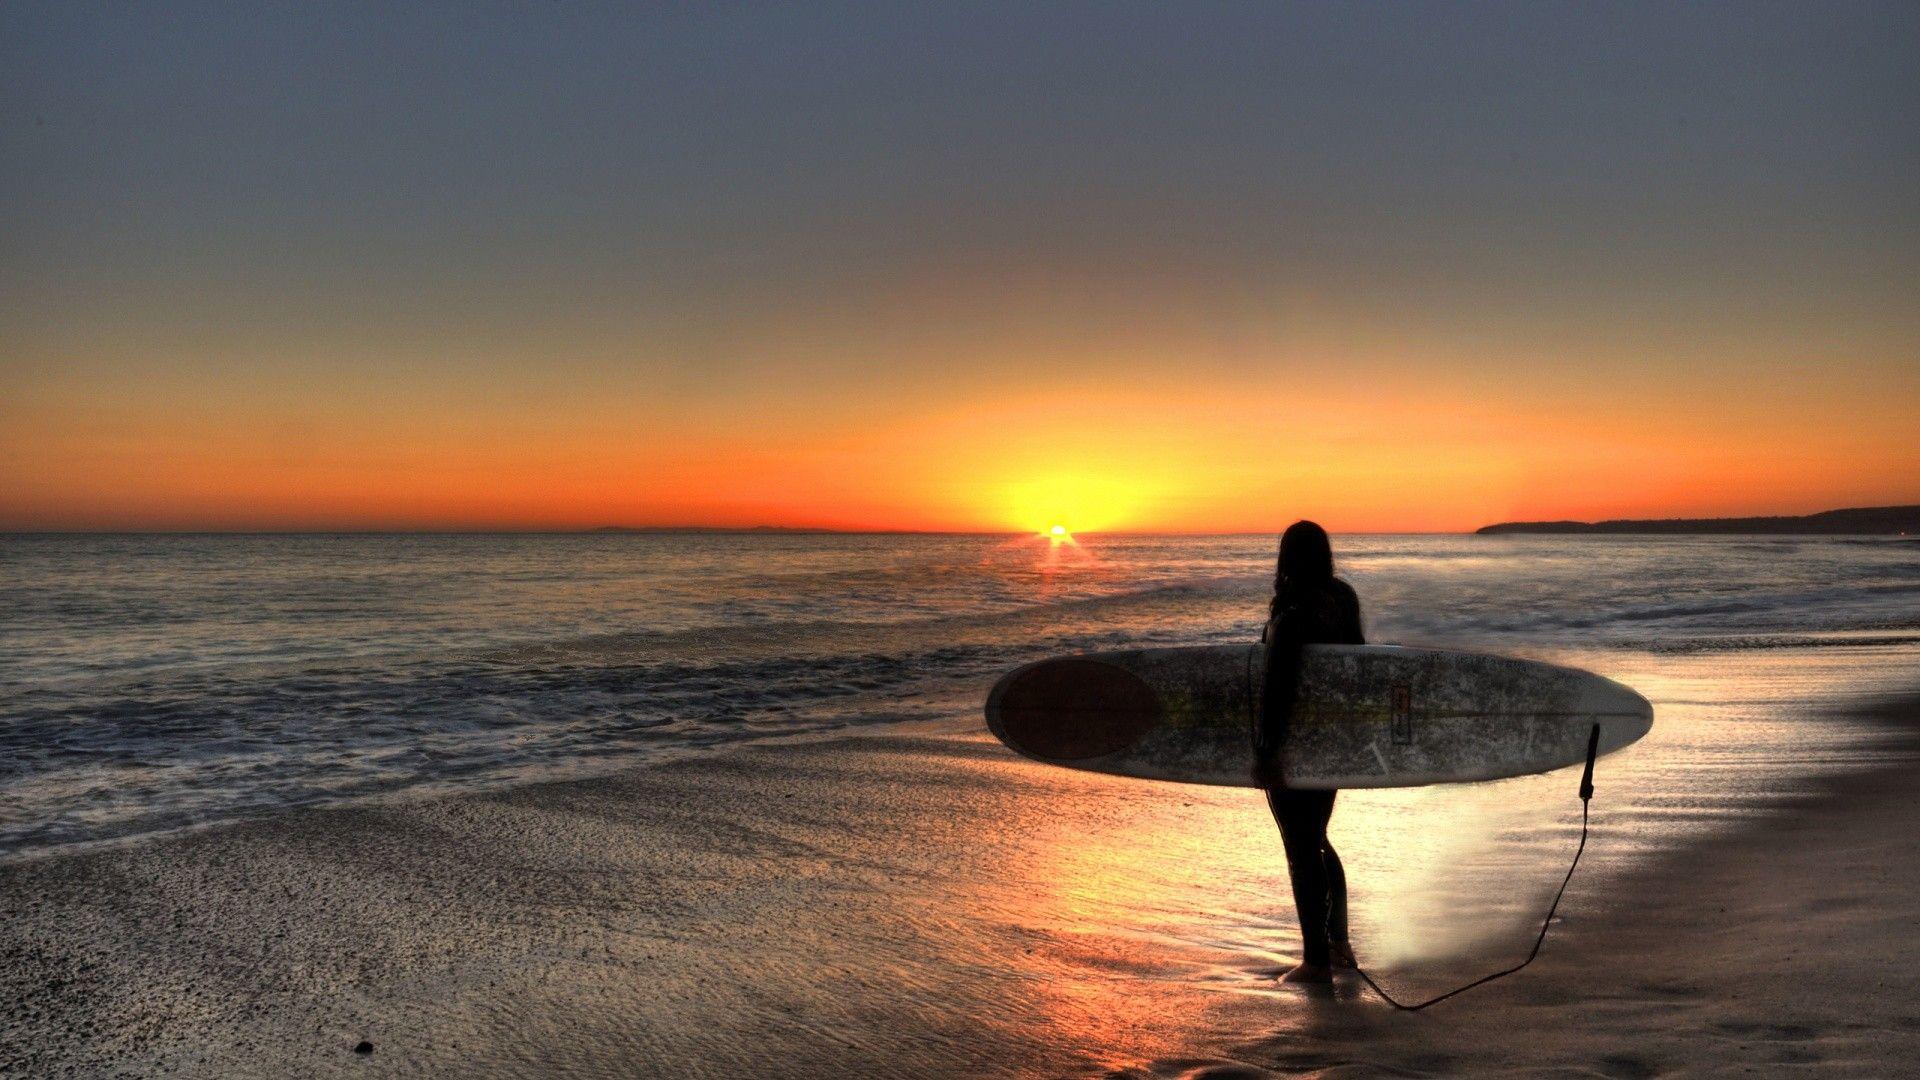 Sport: Sunset Surfer Beach, surfer haircut, surfer&;s journal